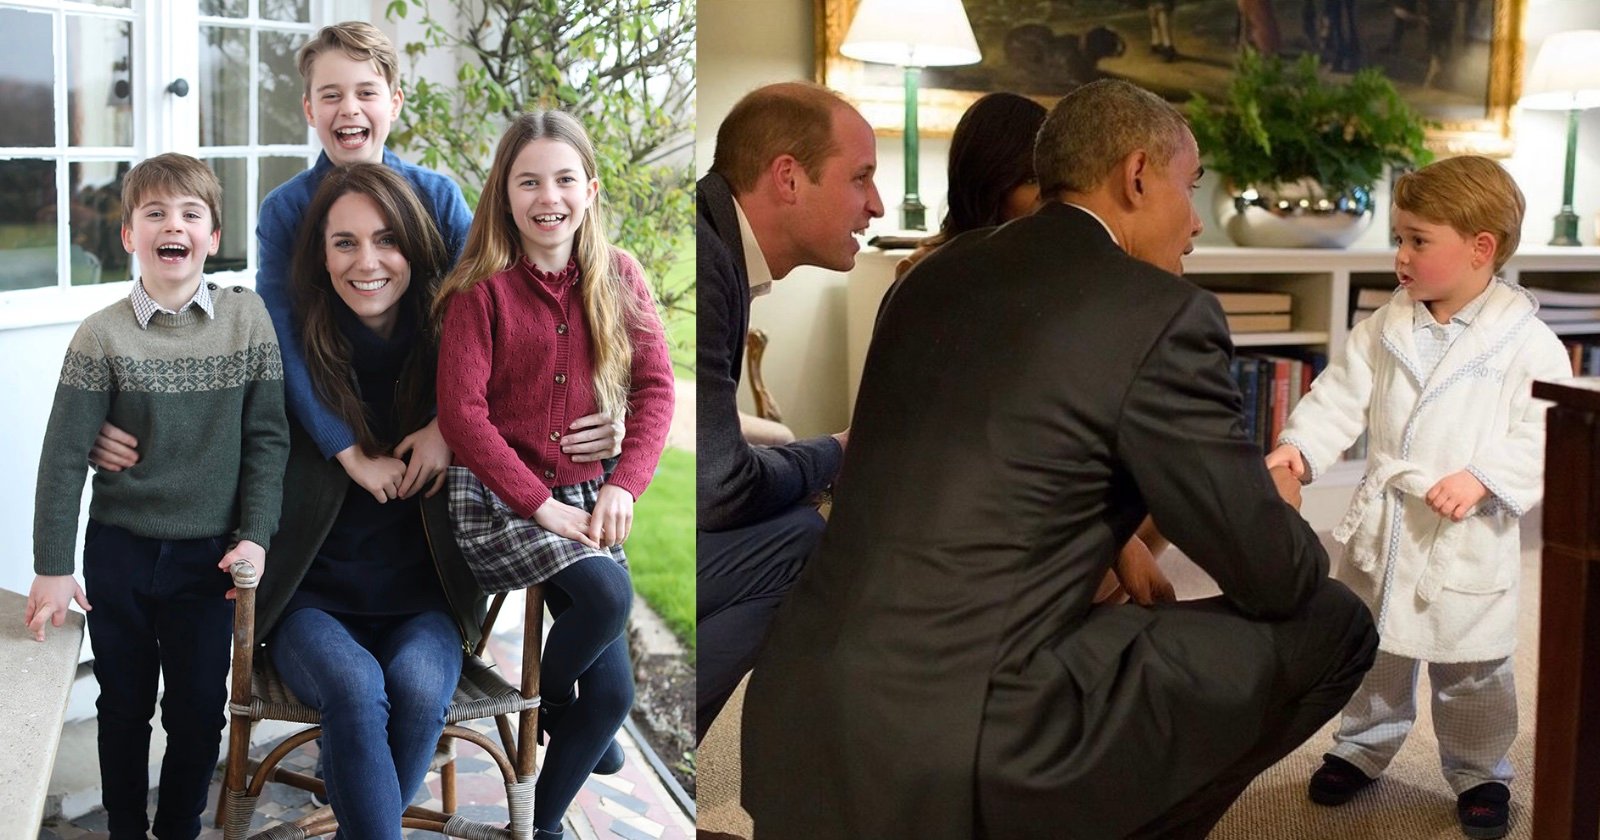  white house photographer says kate middleton photo fake 